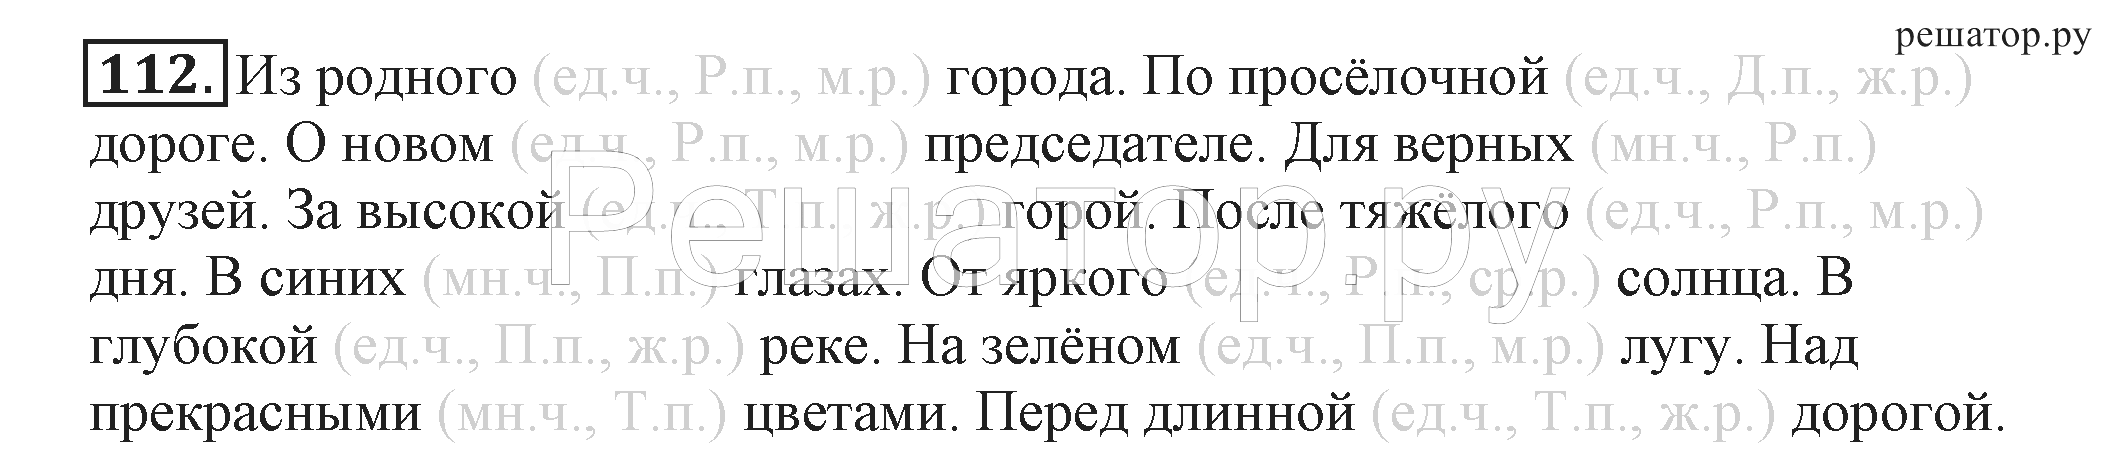 Русский язык 4 класс климанова бабушкина рт. Русский язык 4 класс 2 часть учебник Климанова Бабушкина.